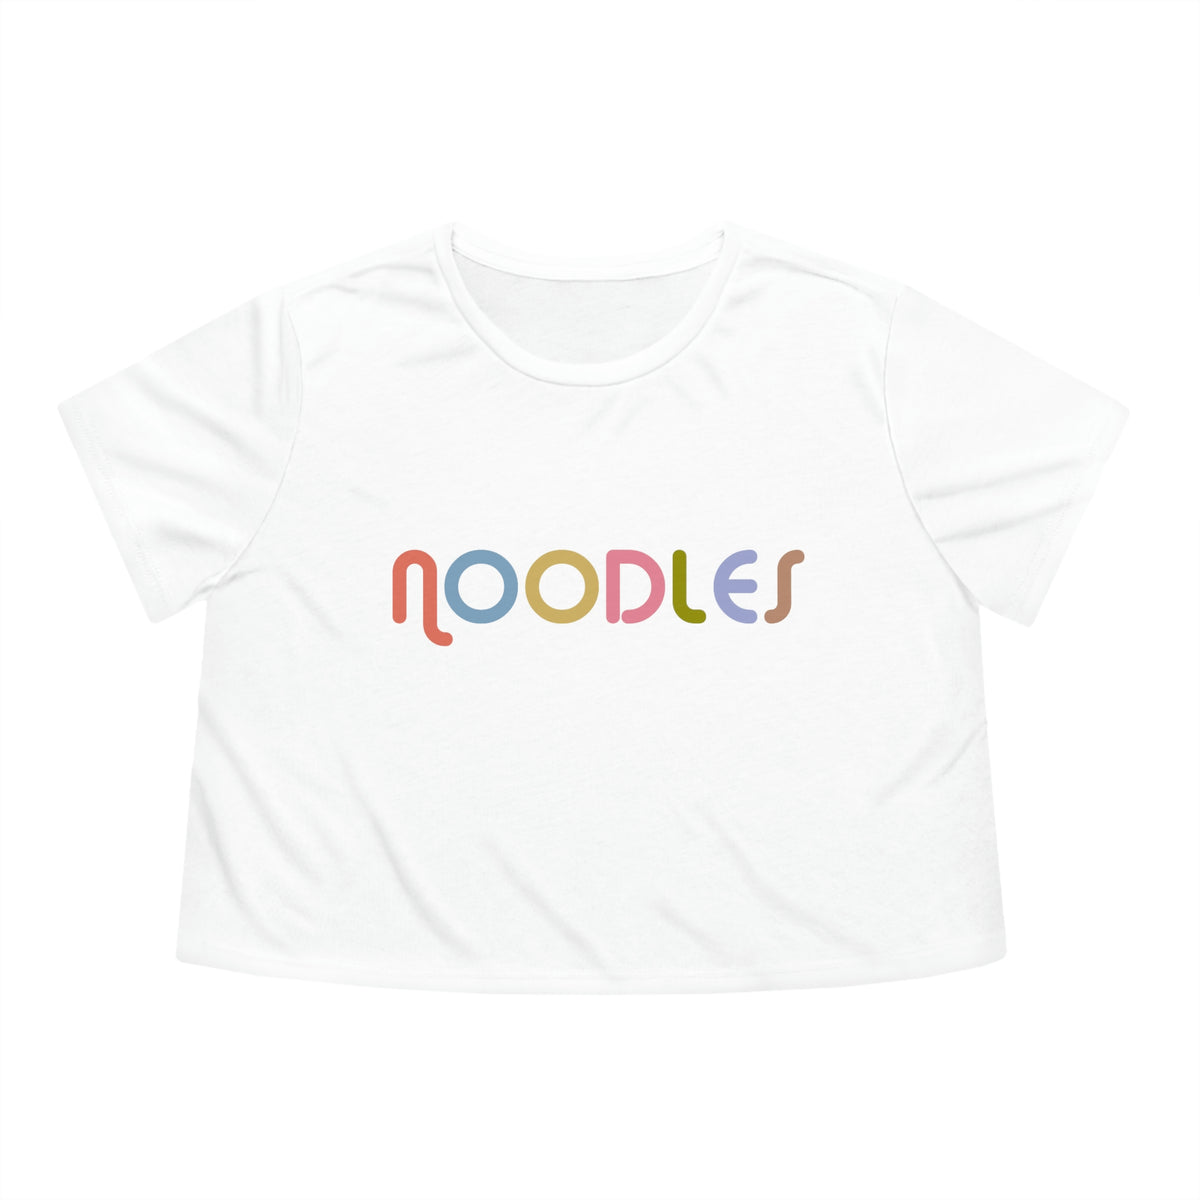 Noodles Crop Tee